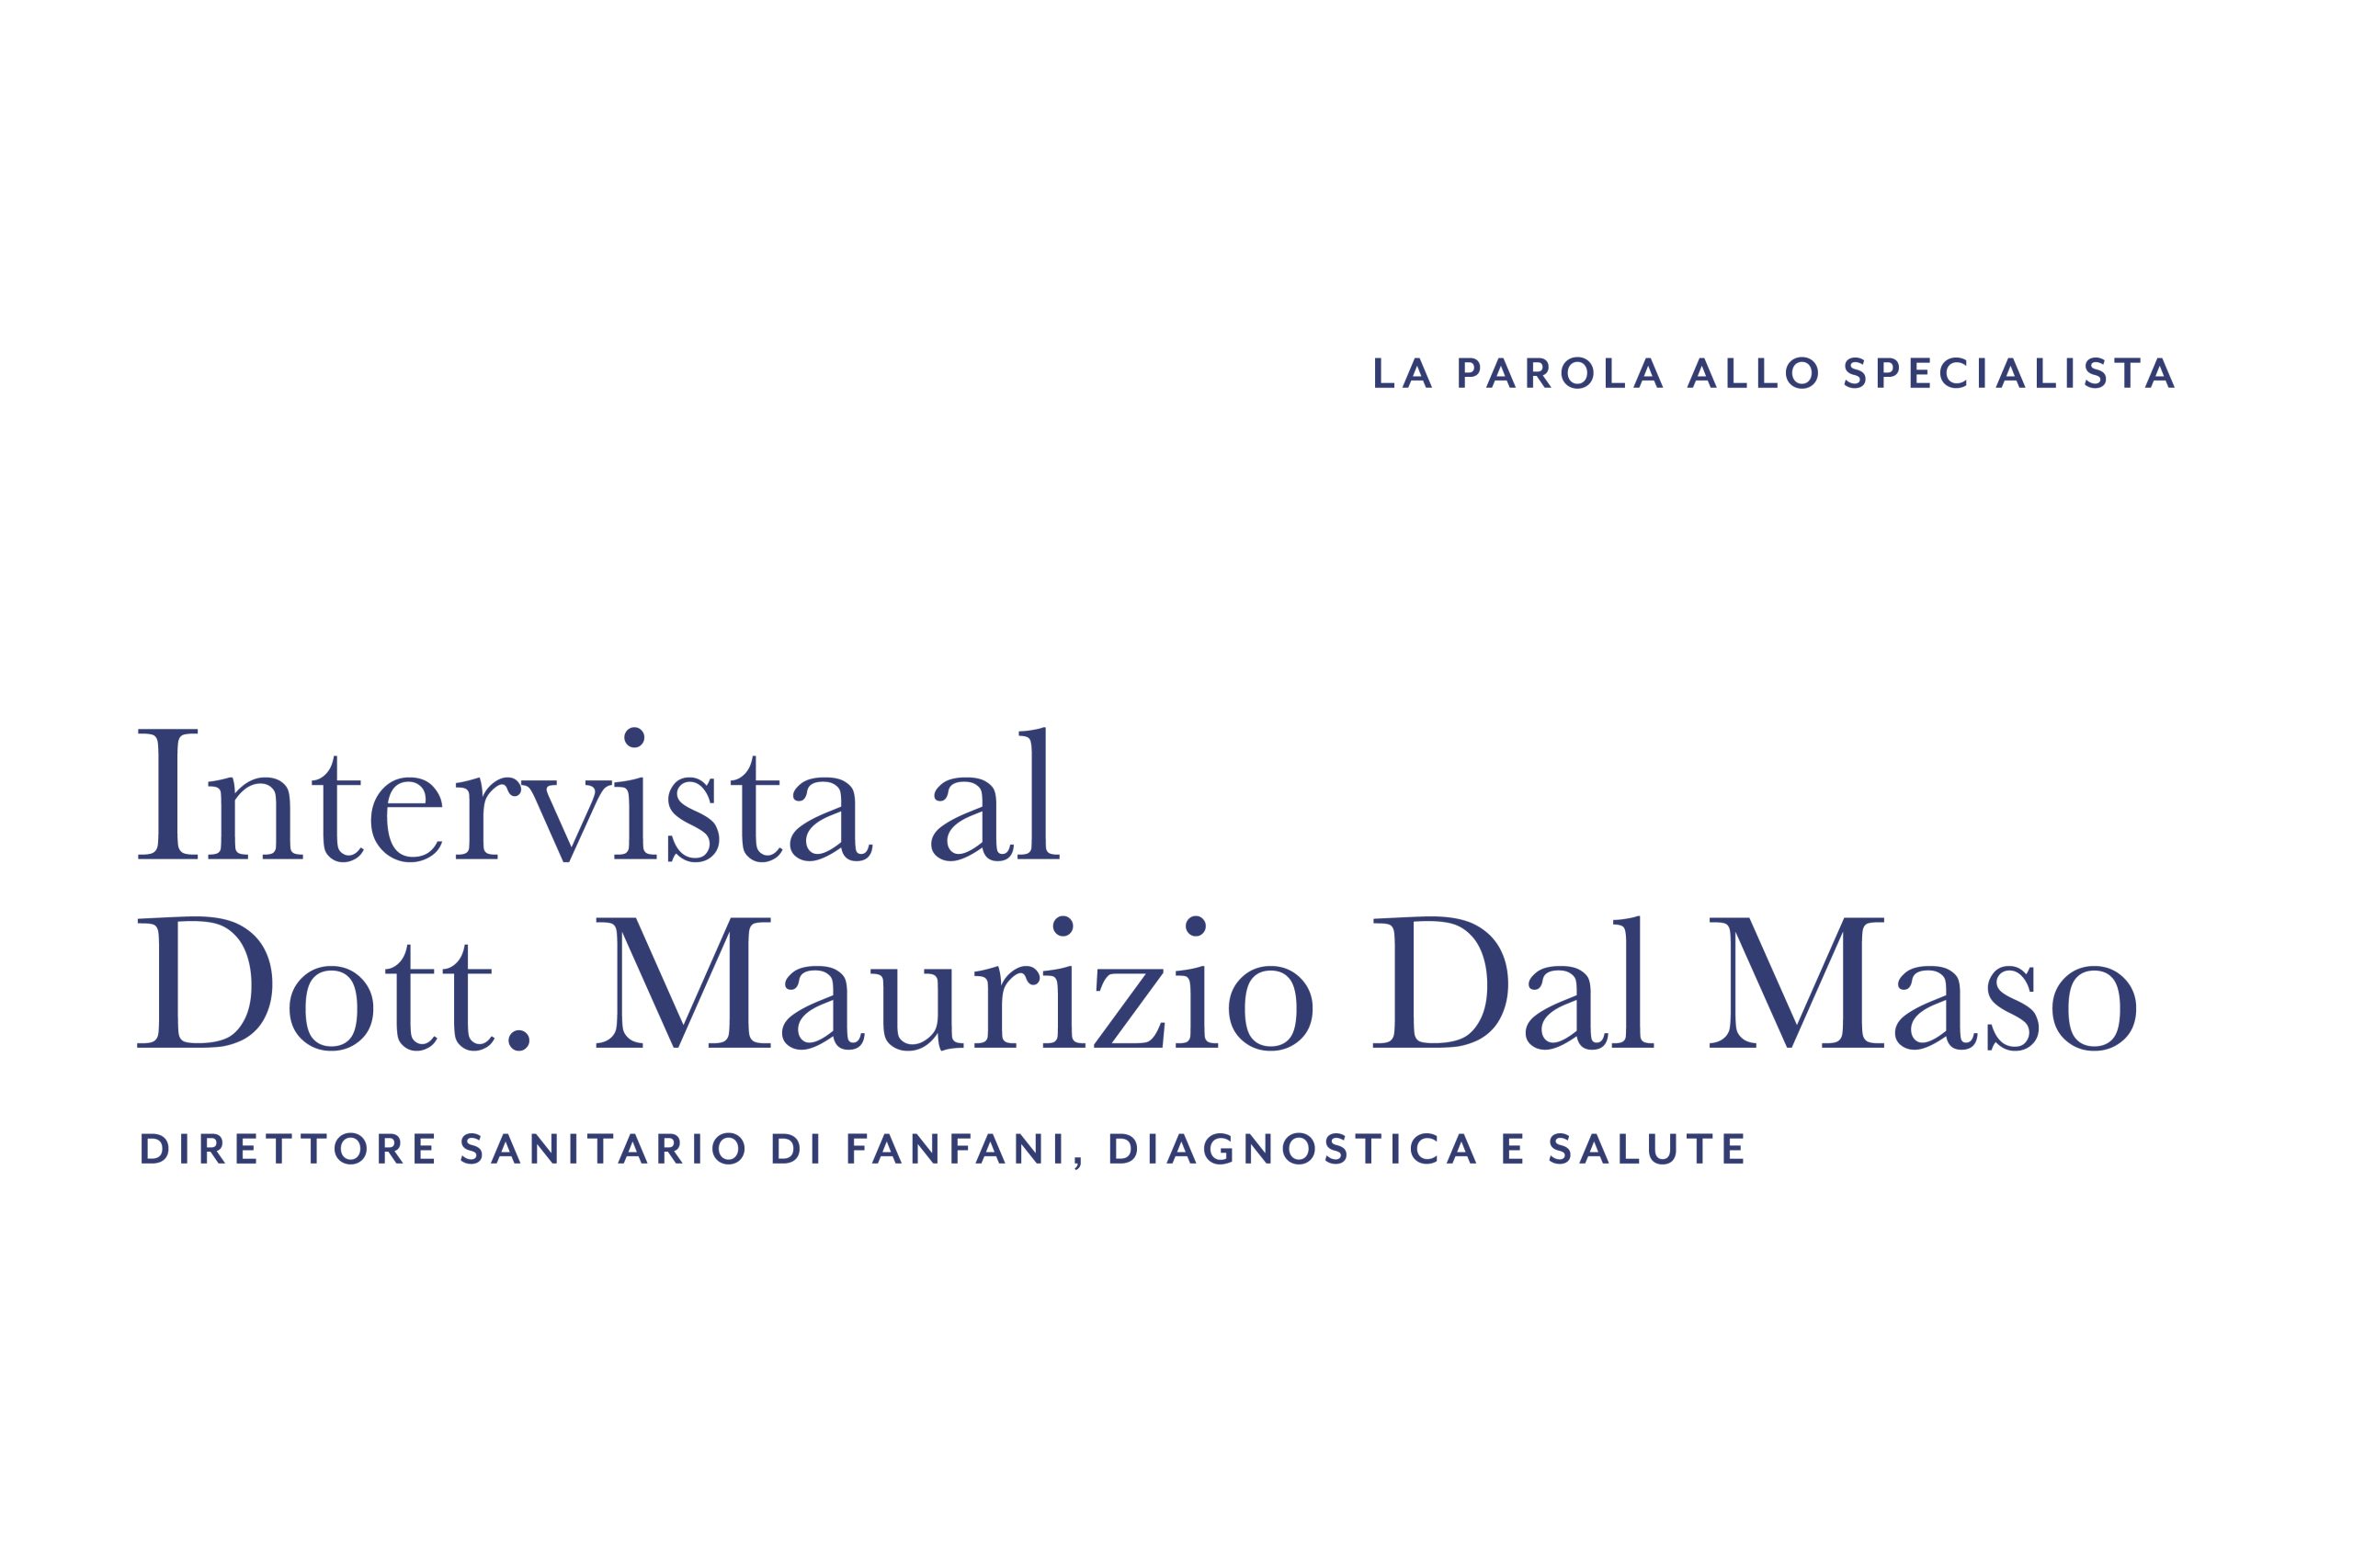 “Qualità e creazione di valore restano per noi modelli da seguire” – Intervista al Dott. Maurizio Dal Maso